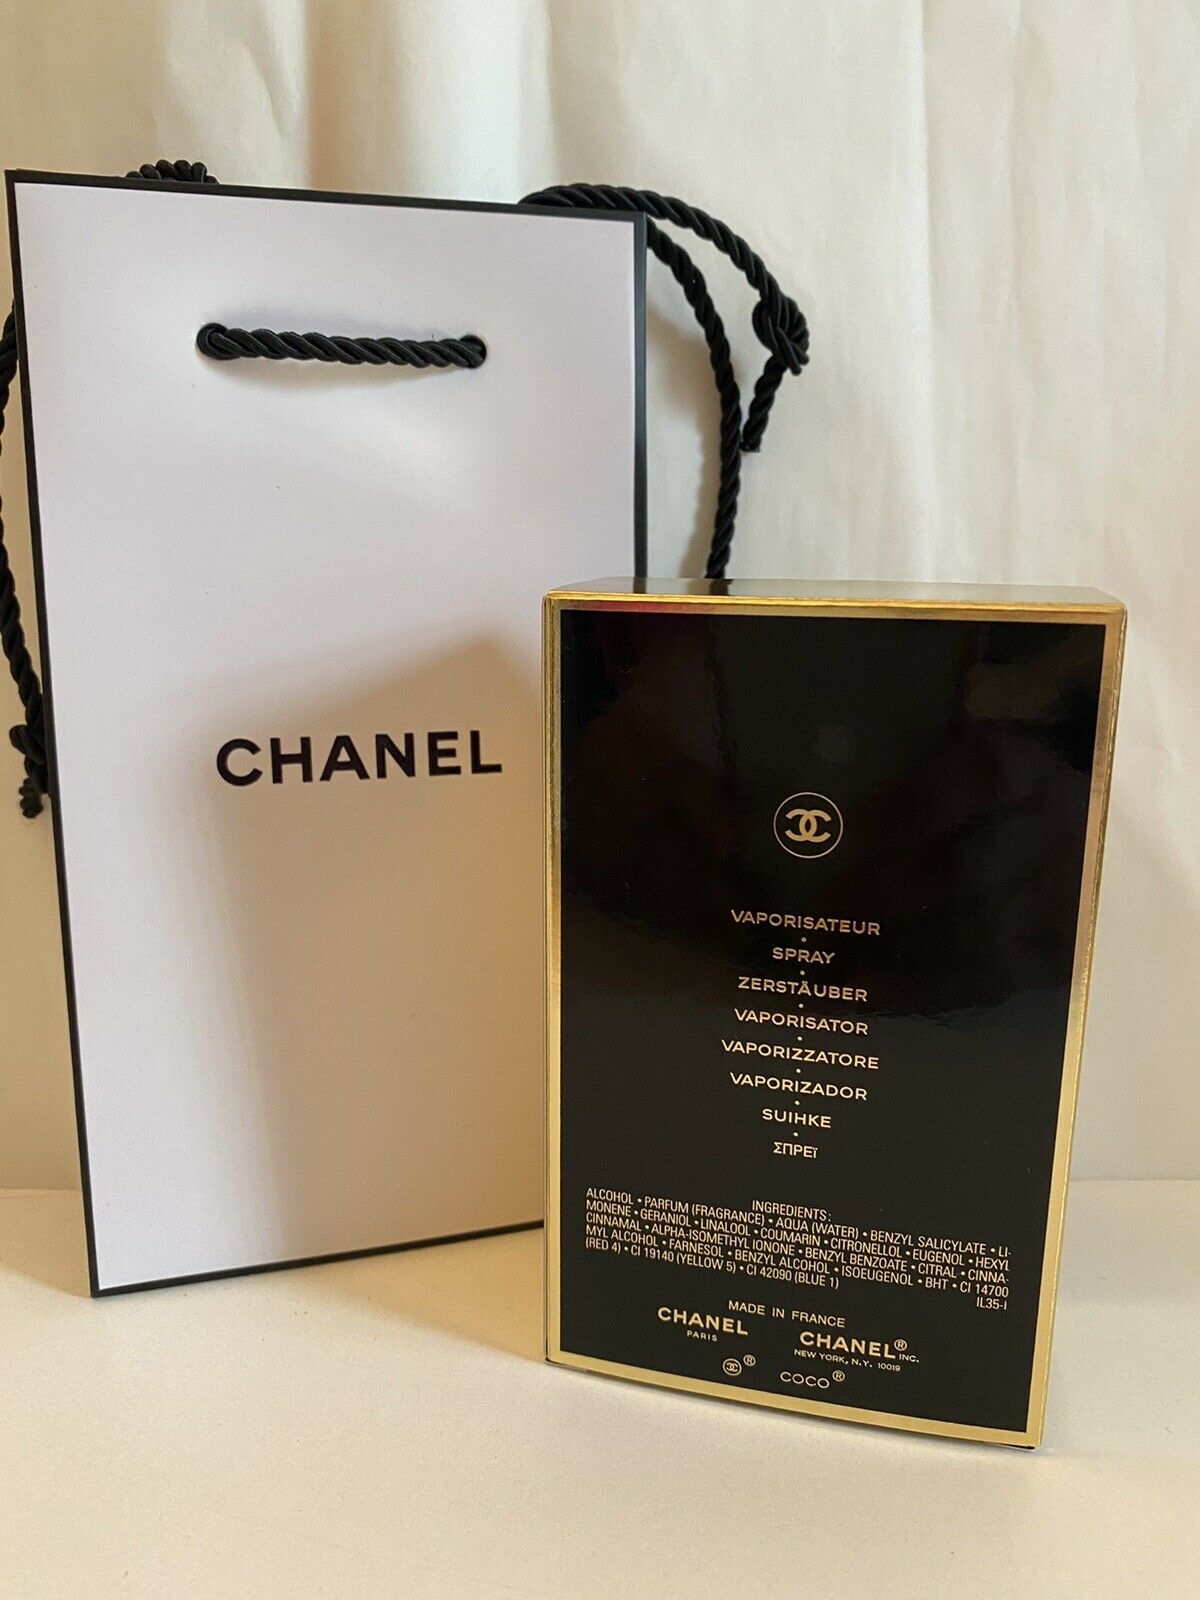 Chiếc giày cao gót Chanel Paris Tuần lễ Thời trang người Mẫu  đôi mười một  lễ hội mua sắm png tải về  Miễn phí trong suốt Ngoài Trời Giày png